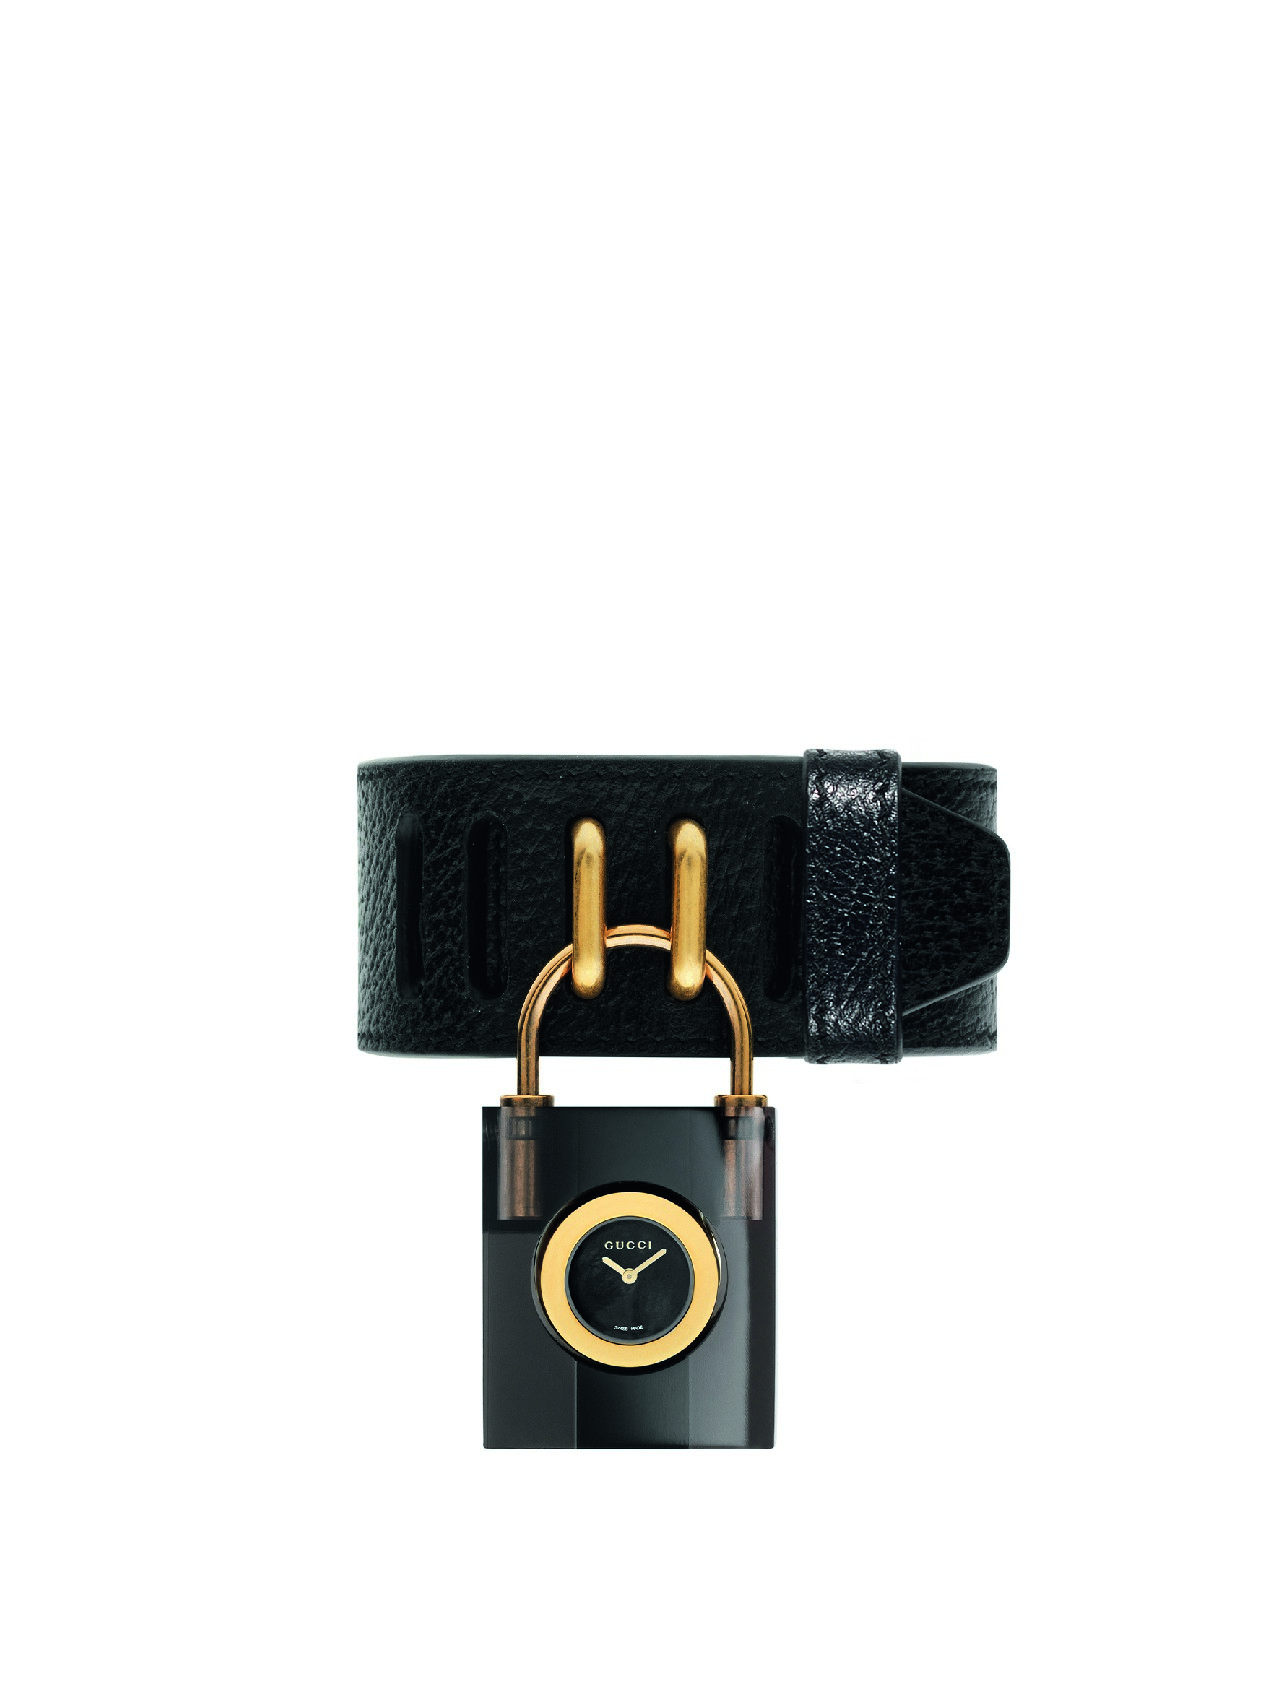 Gucci orologi 2017: la collezione Costance, cinque orologi dedicati a Constance Chatterley